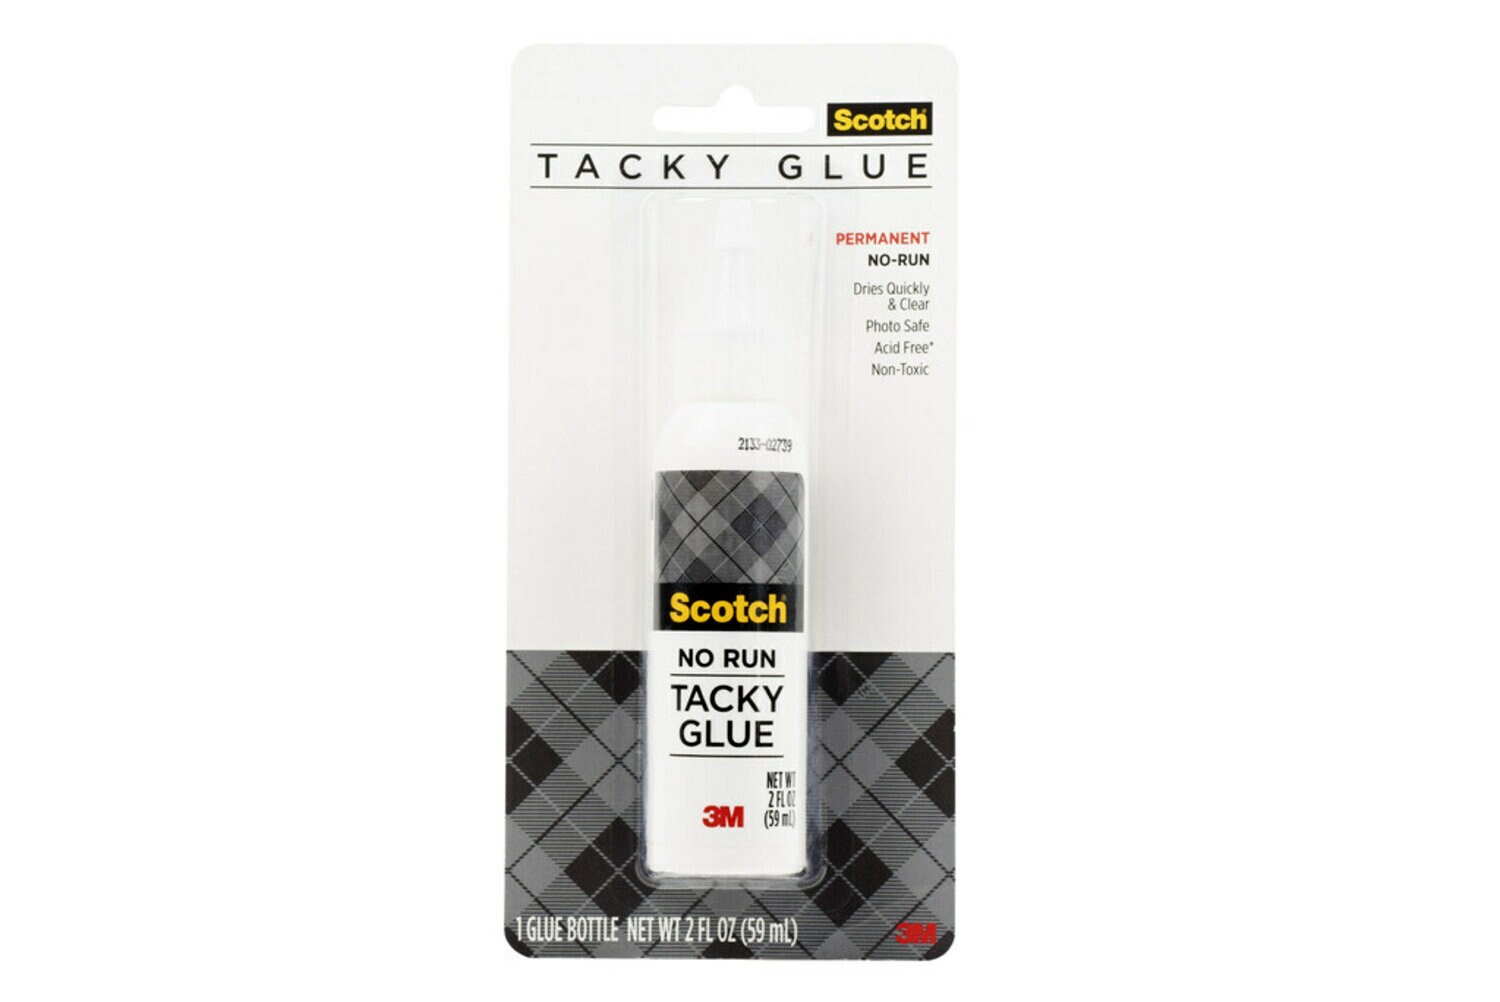 7010333589 - Scotch Tacky Glue 020-CFT, 2 fl oz (59 mL)